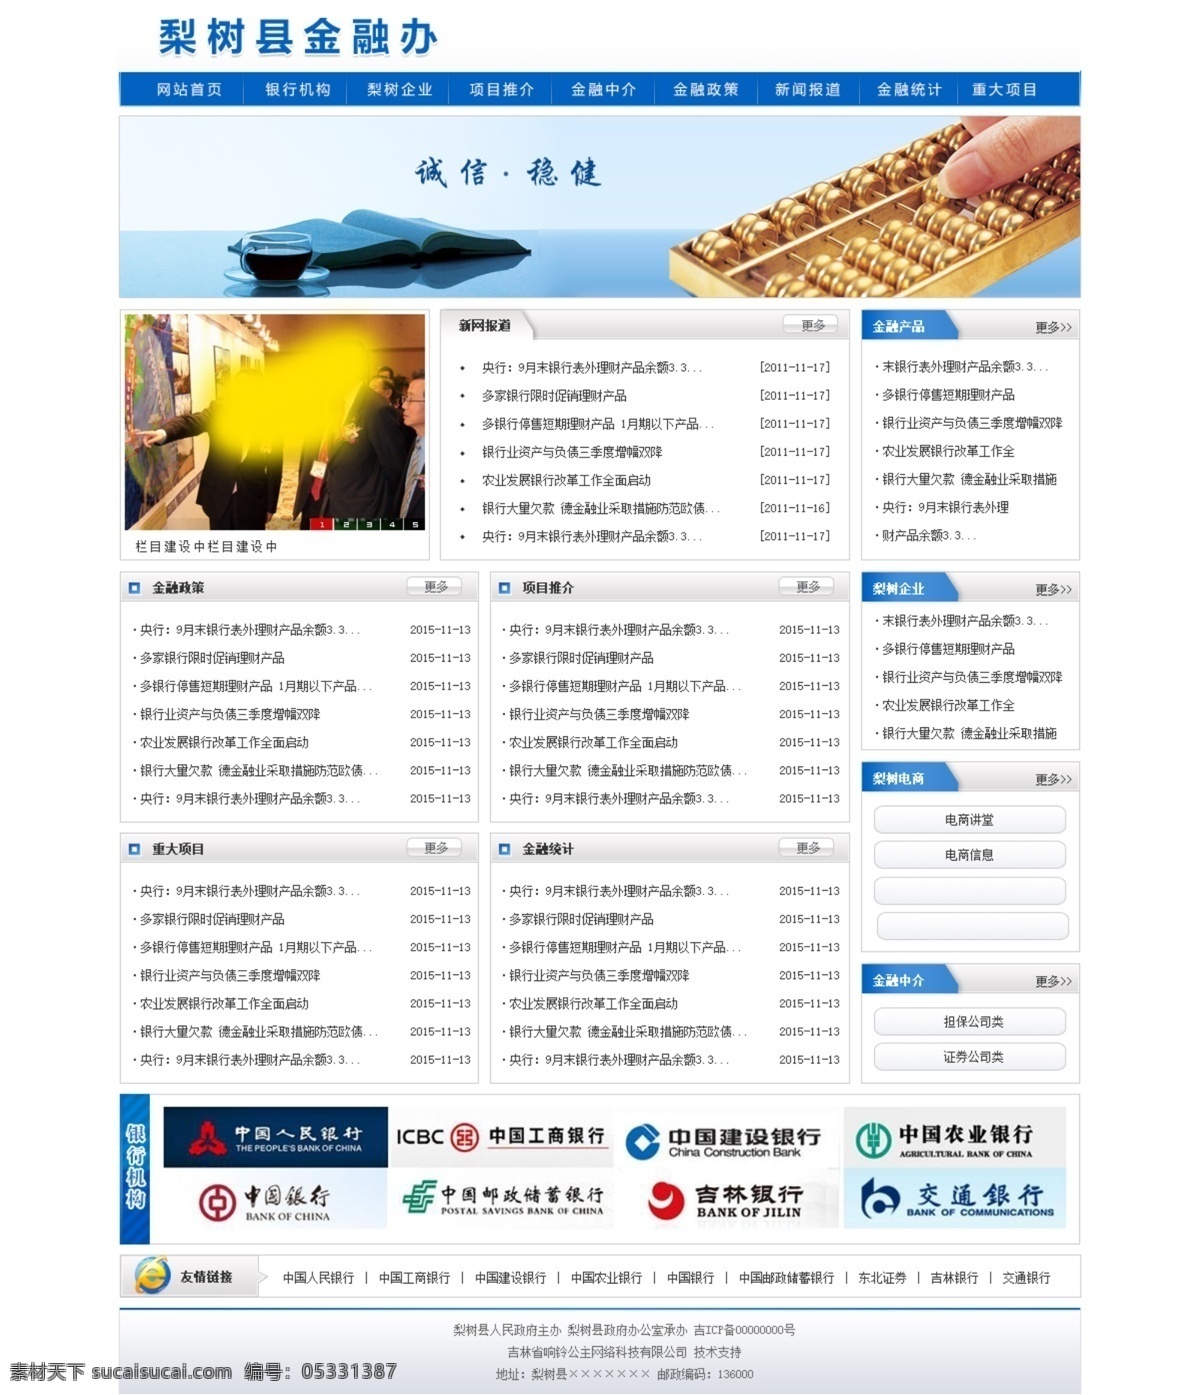 政府网站模板 企业网站模板 网站psd 蓝色网站 红色网站模板 大气网页 简介网页模板 web 界面设计 中文模板